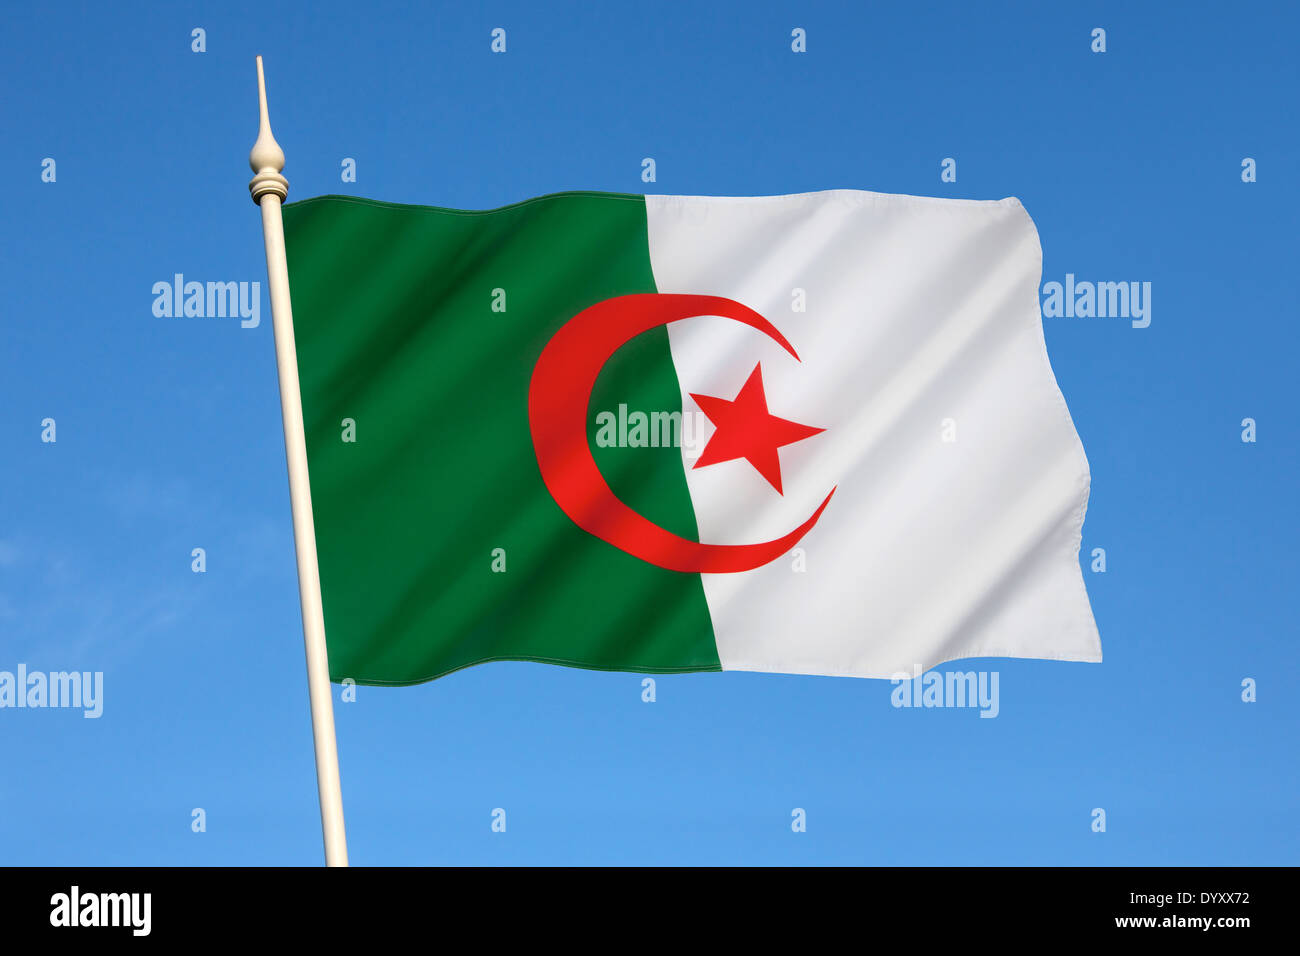 Le drapeau national de l'Algérie Banque D'Images